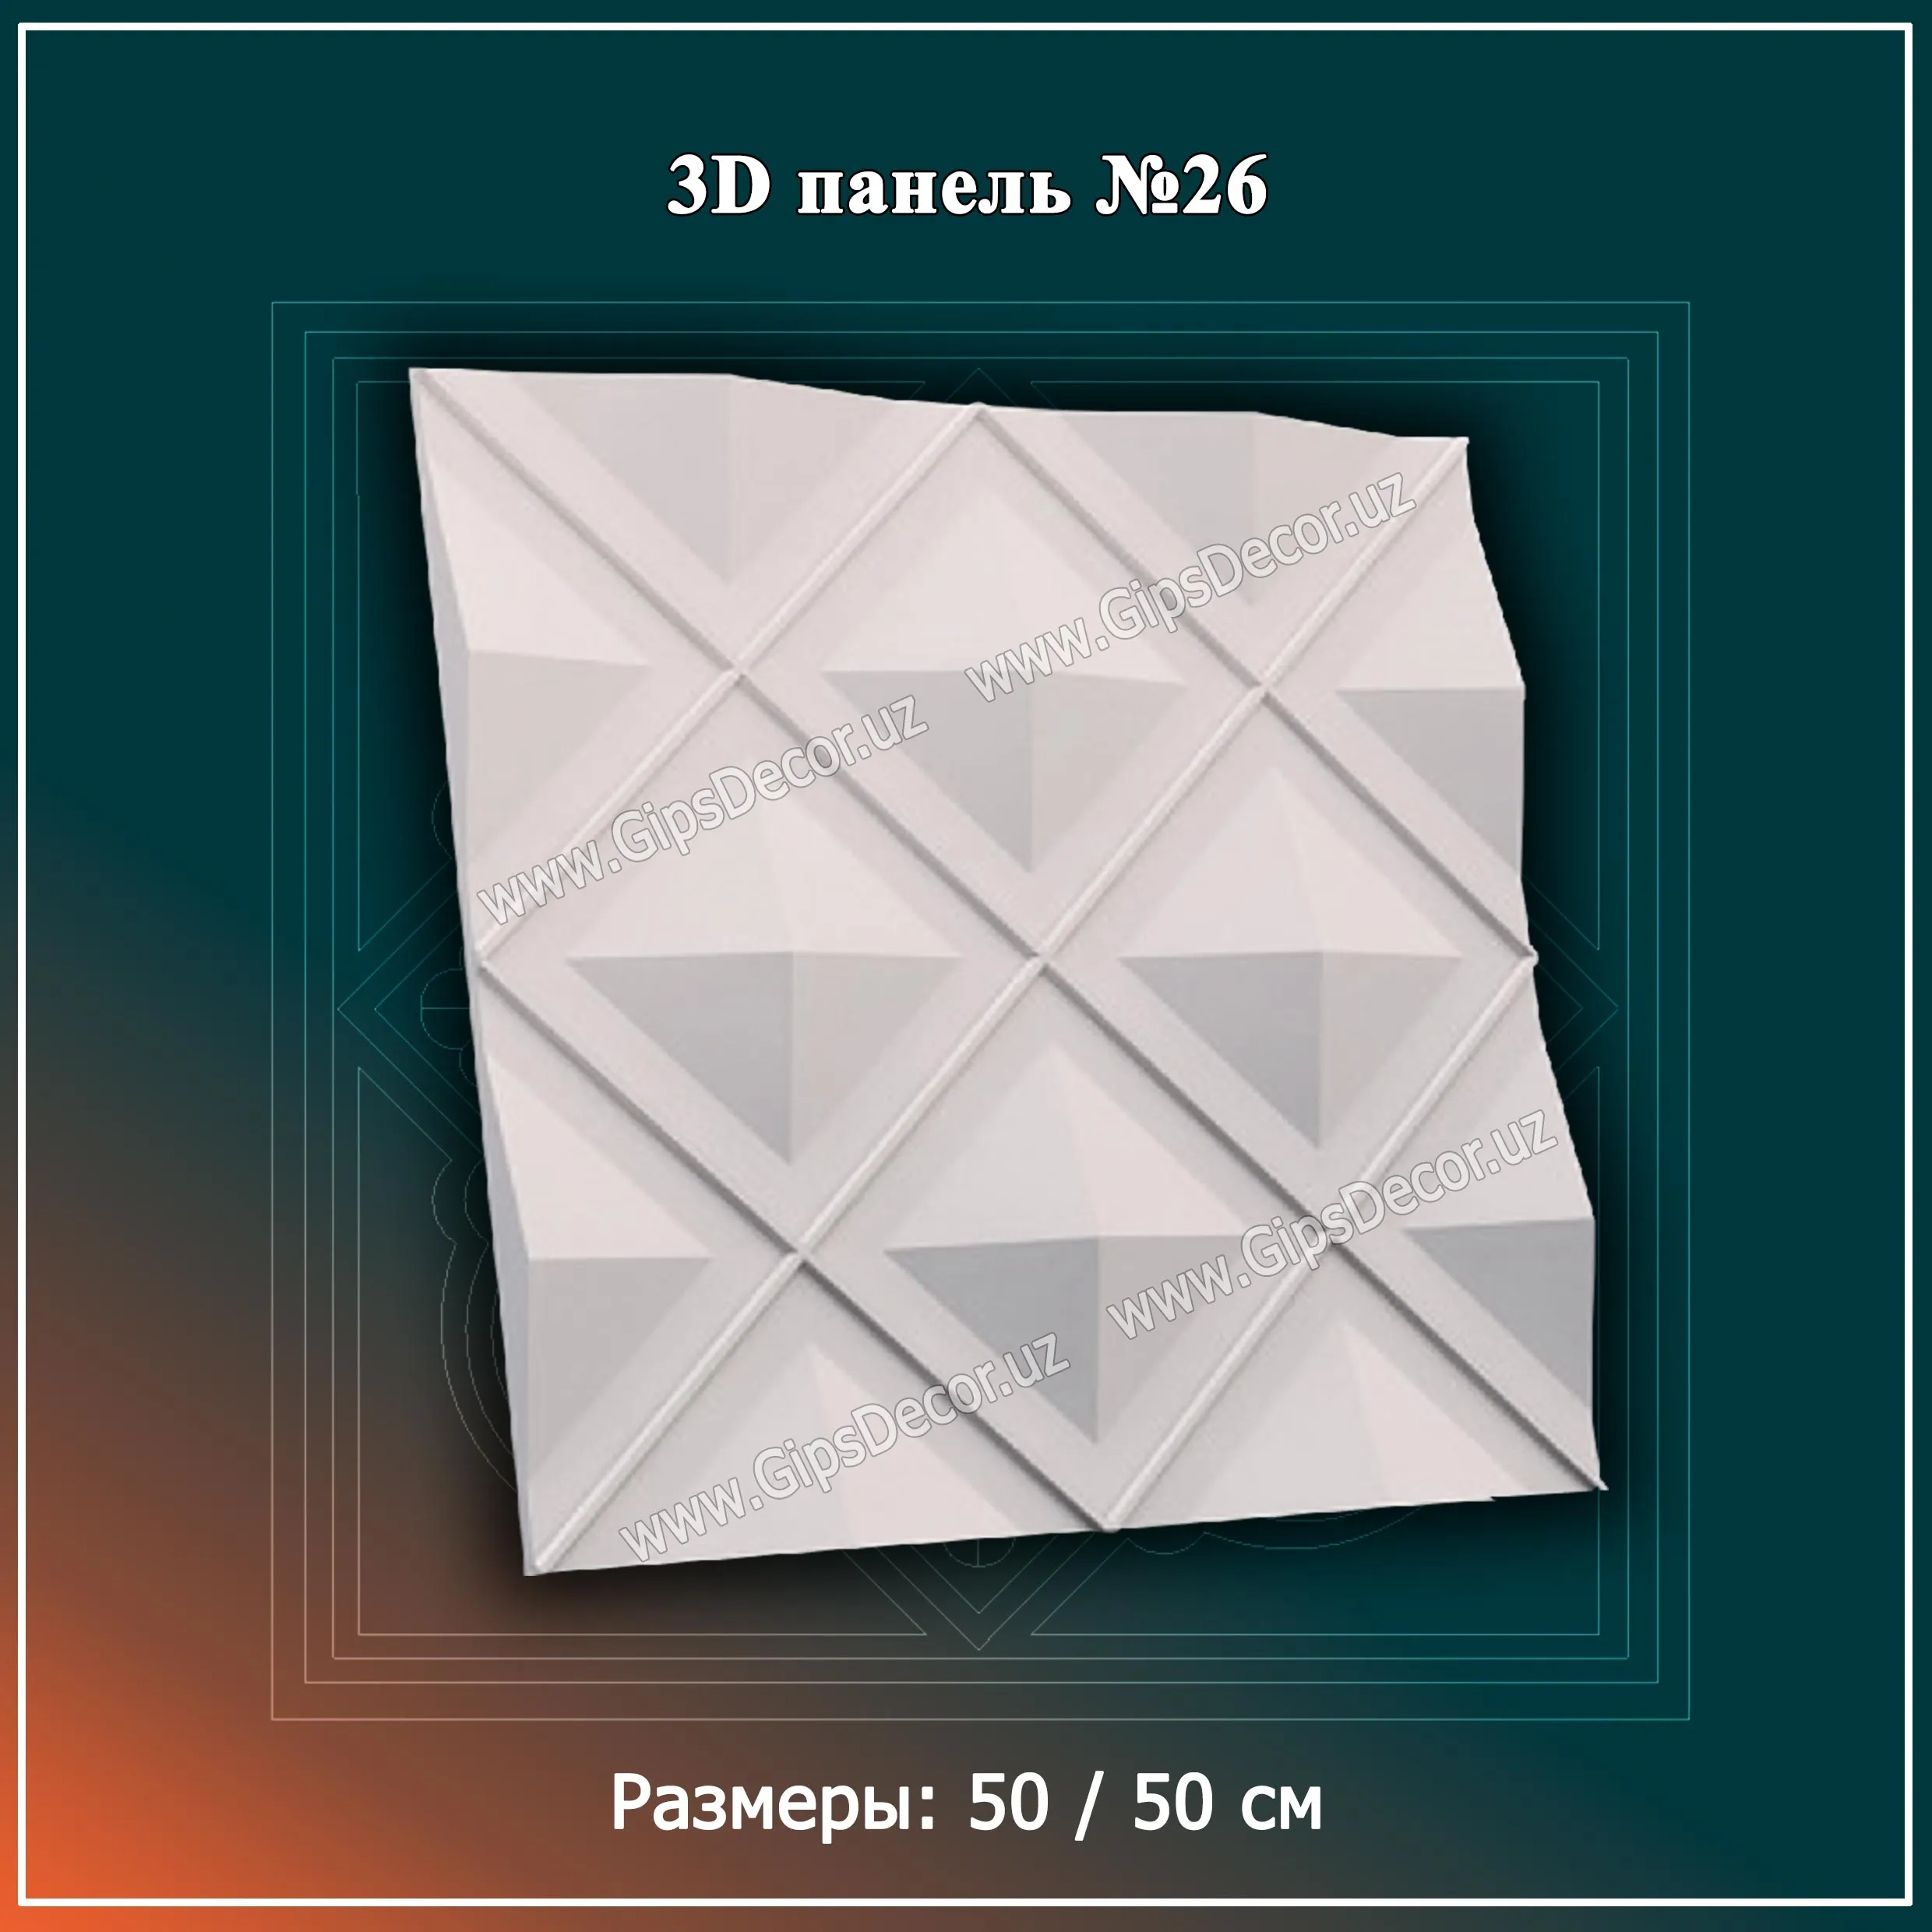 3D Панель №26 Размеры: 50 / 50 см#1